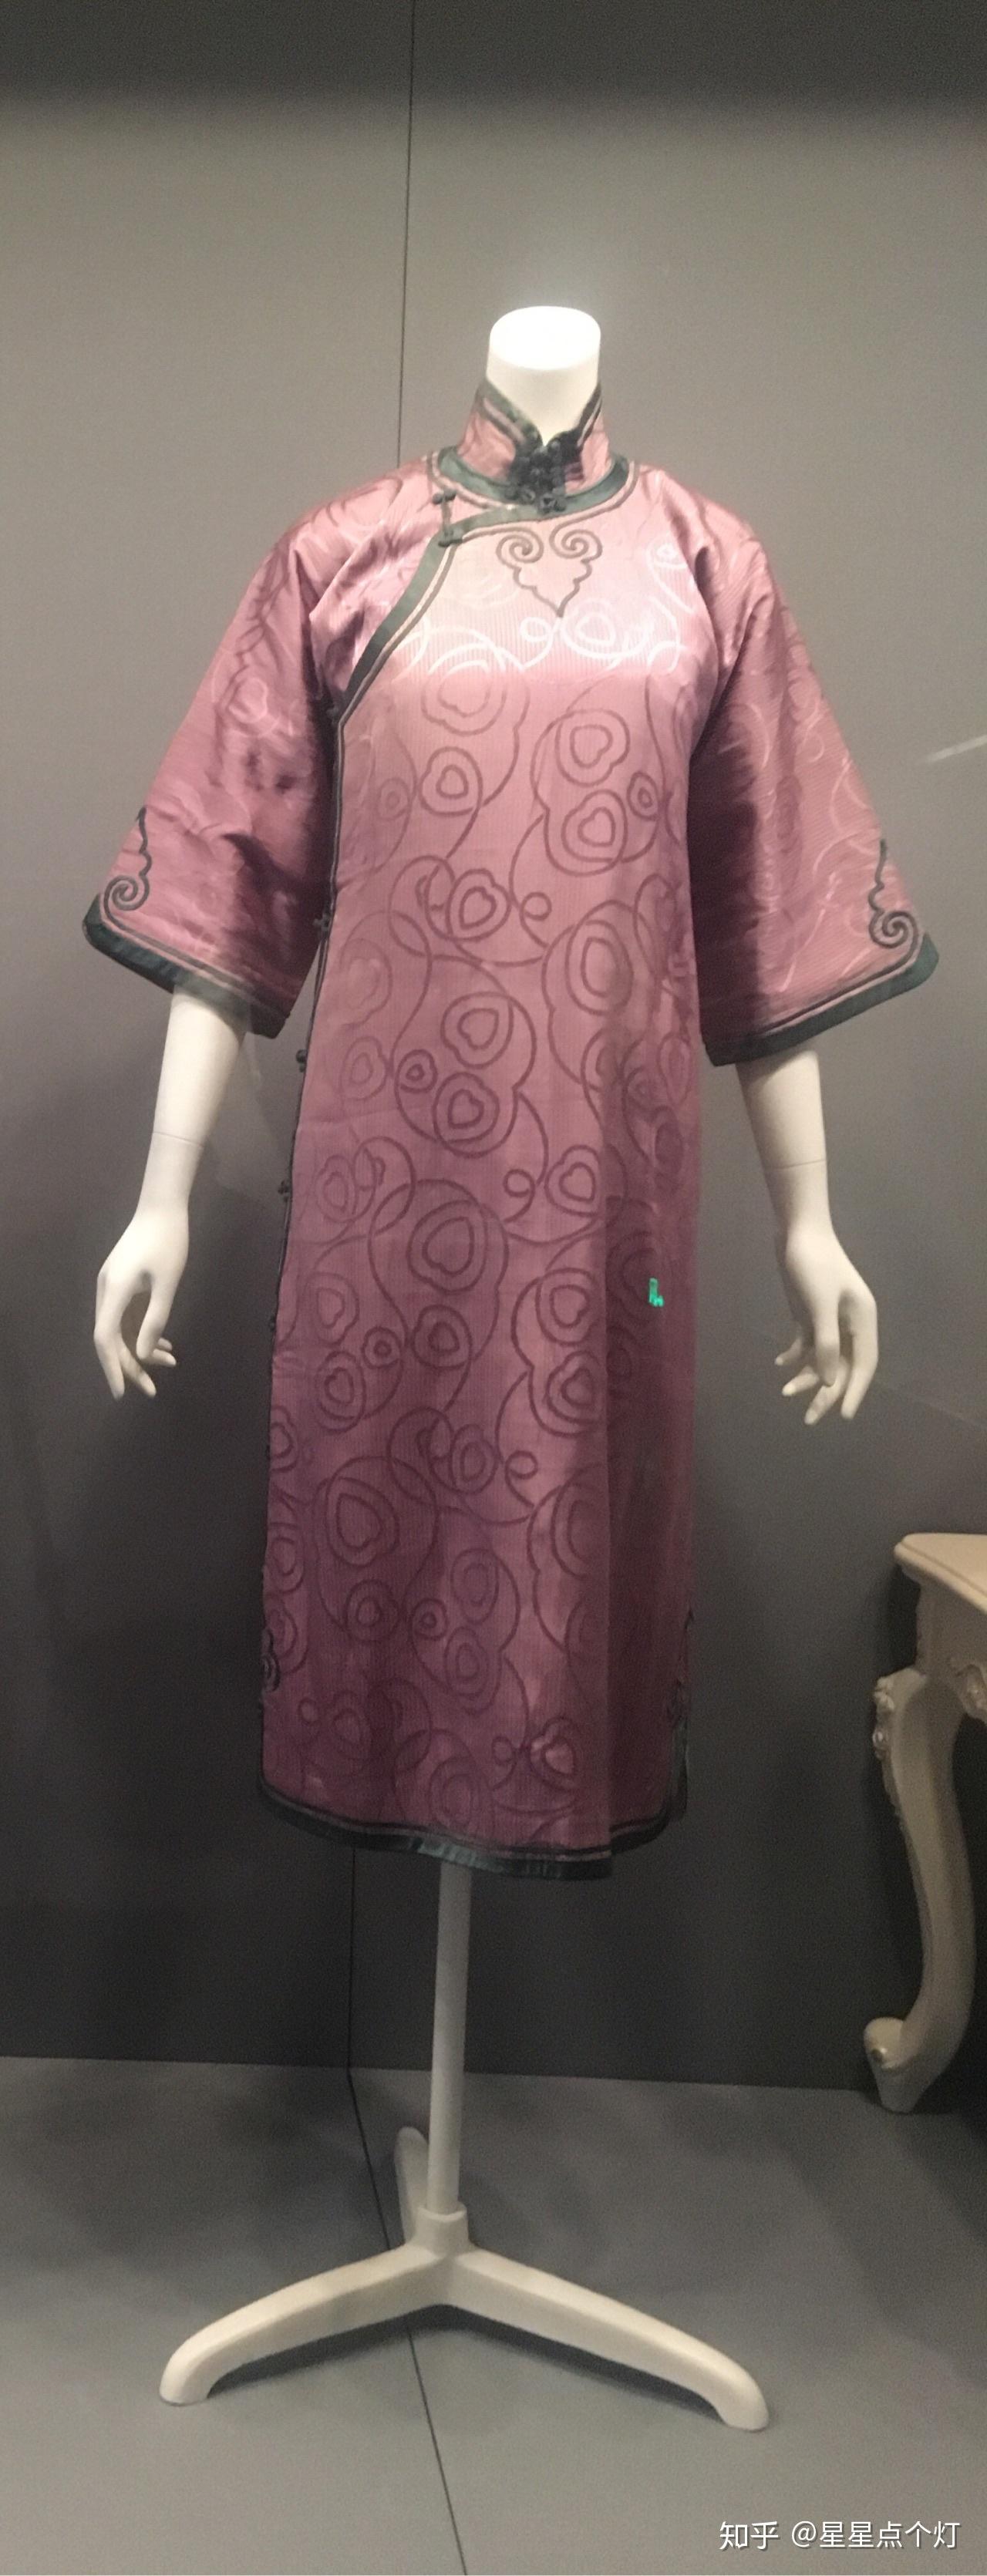 20年代倒大袖旗袍 中国丝绸博物馆 图片来源微博 青尘长弓